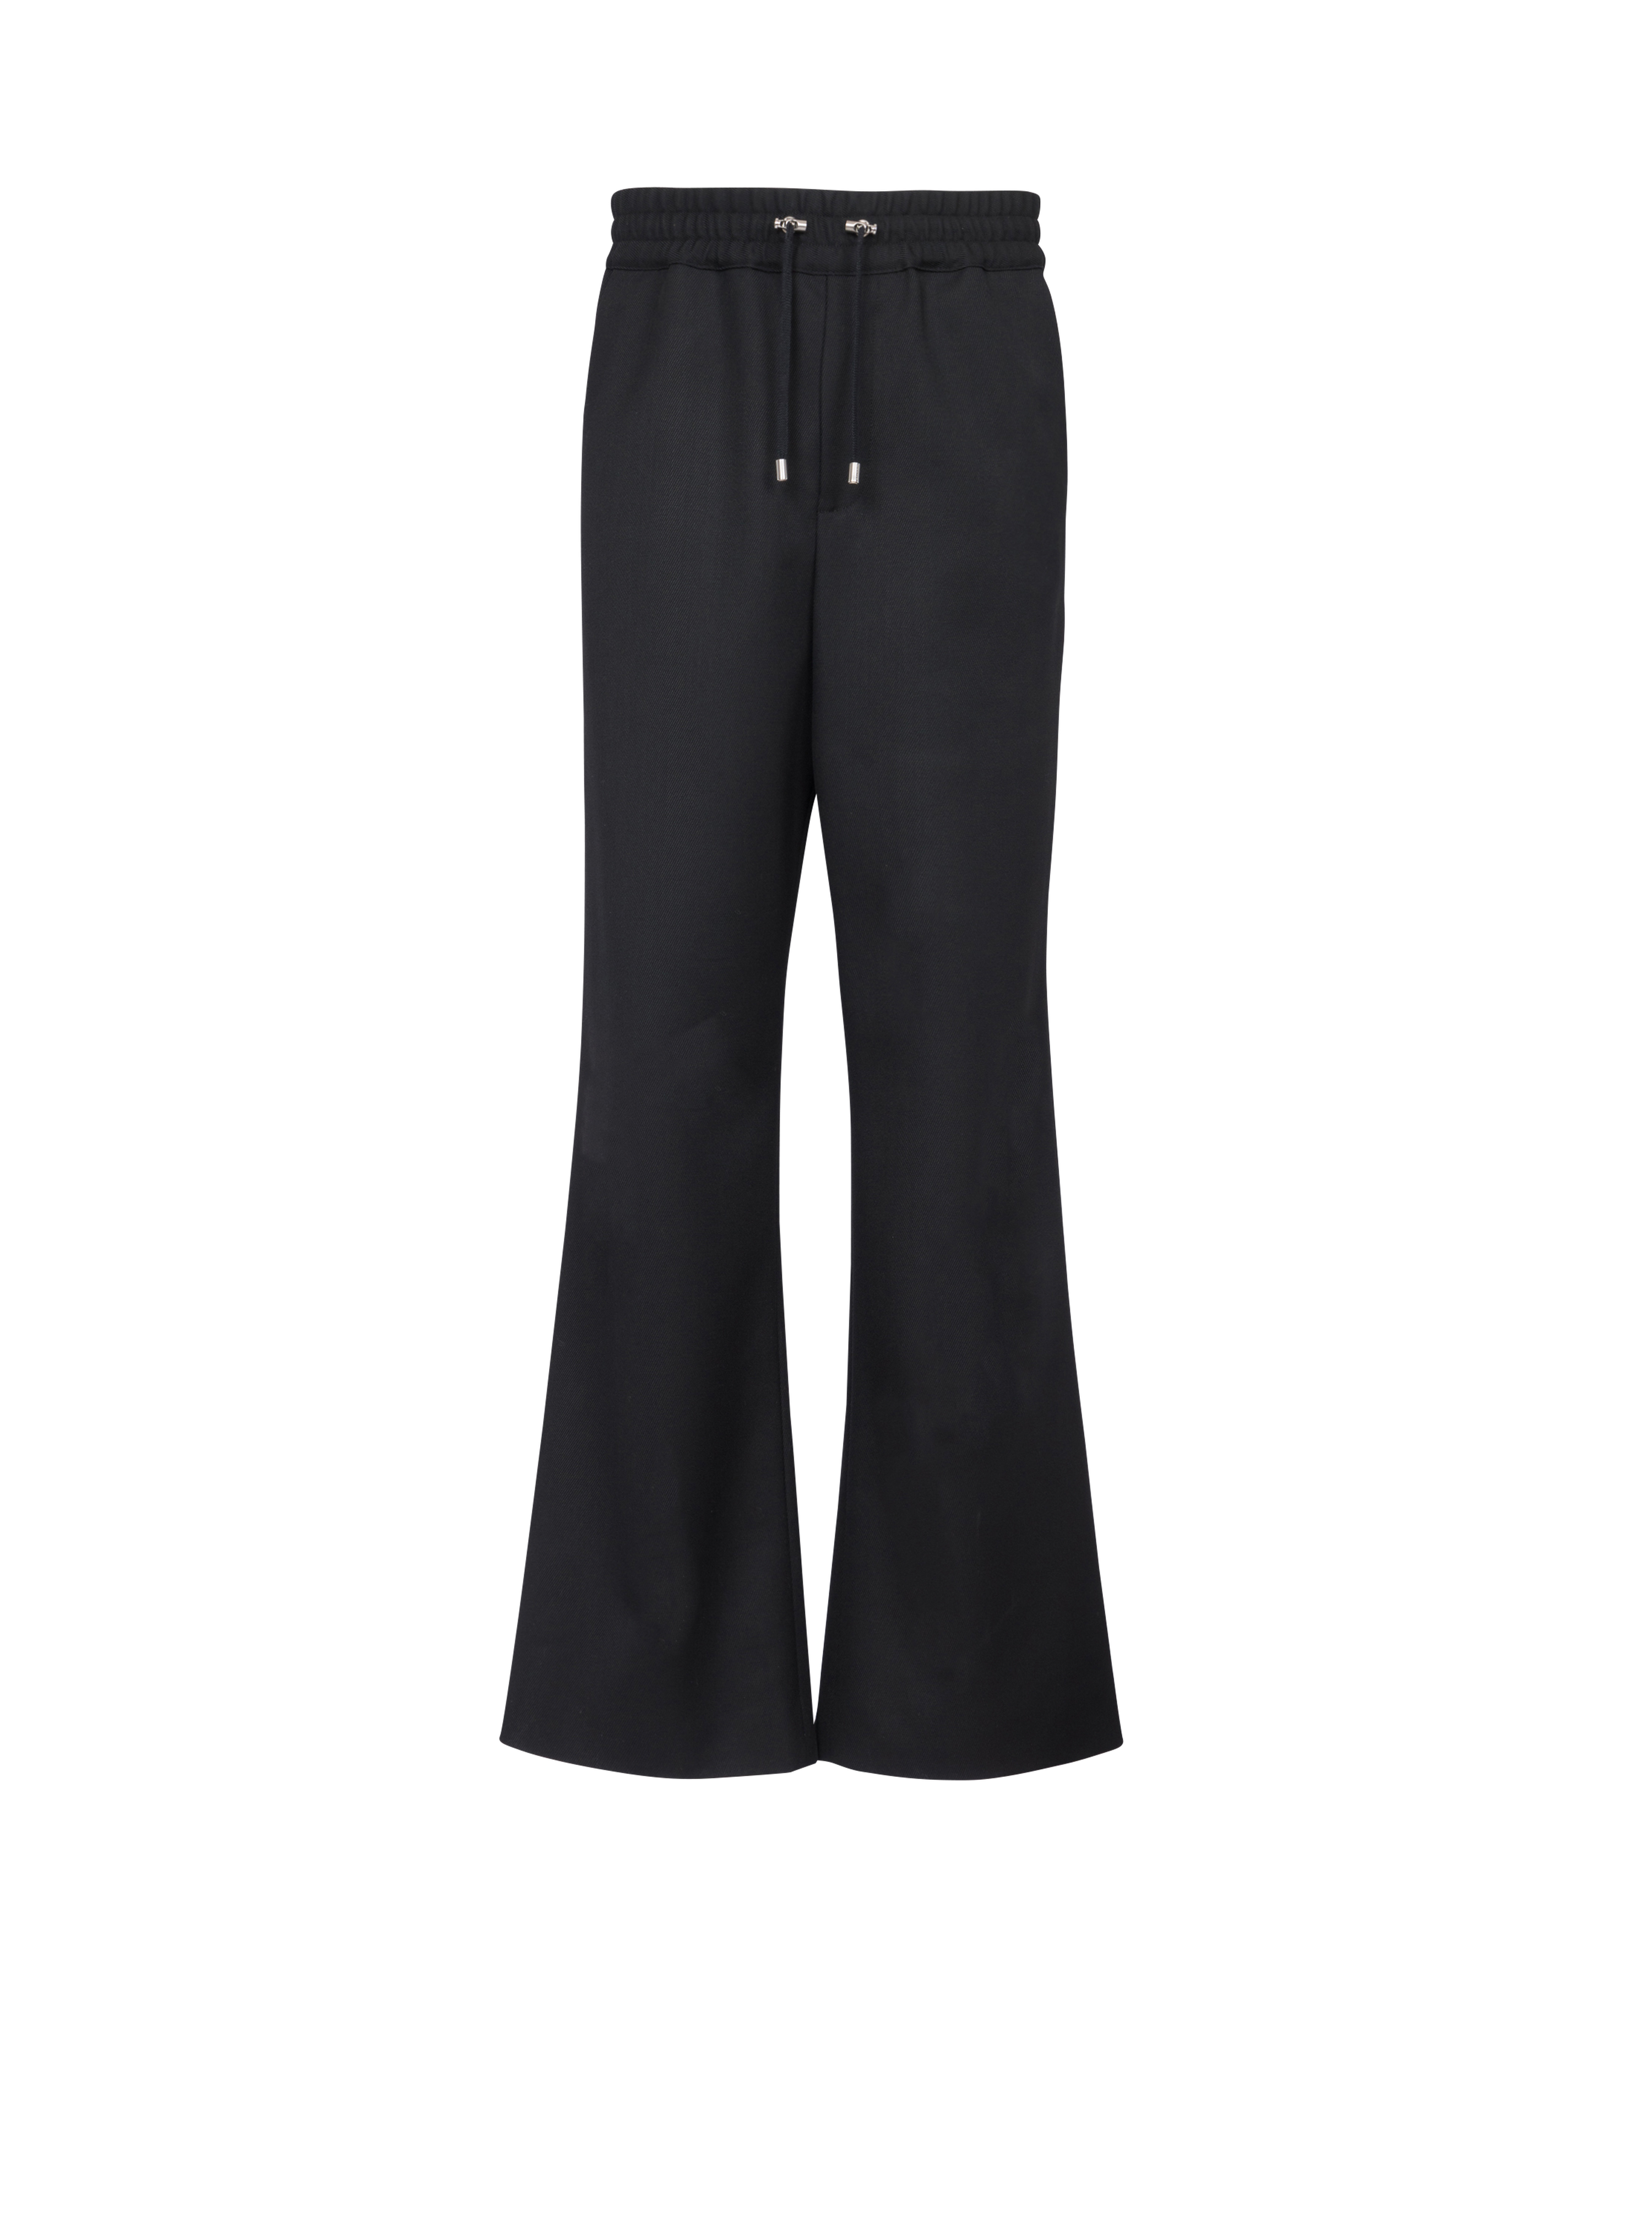 Wool pyjama pants, black